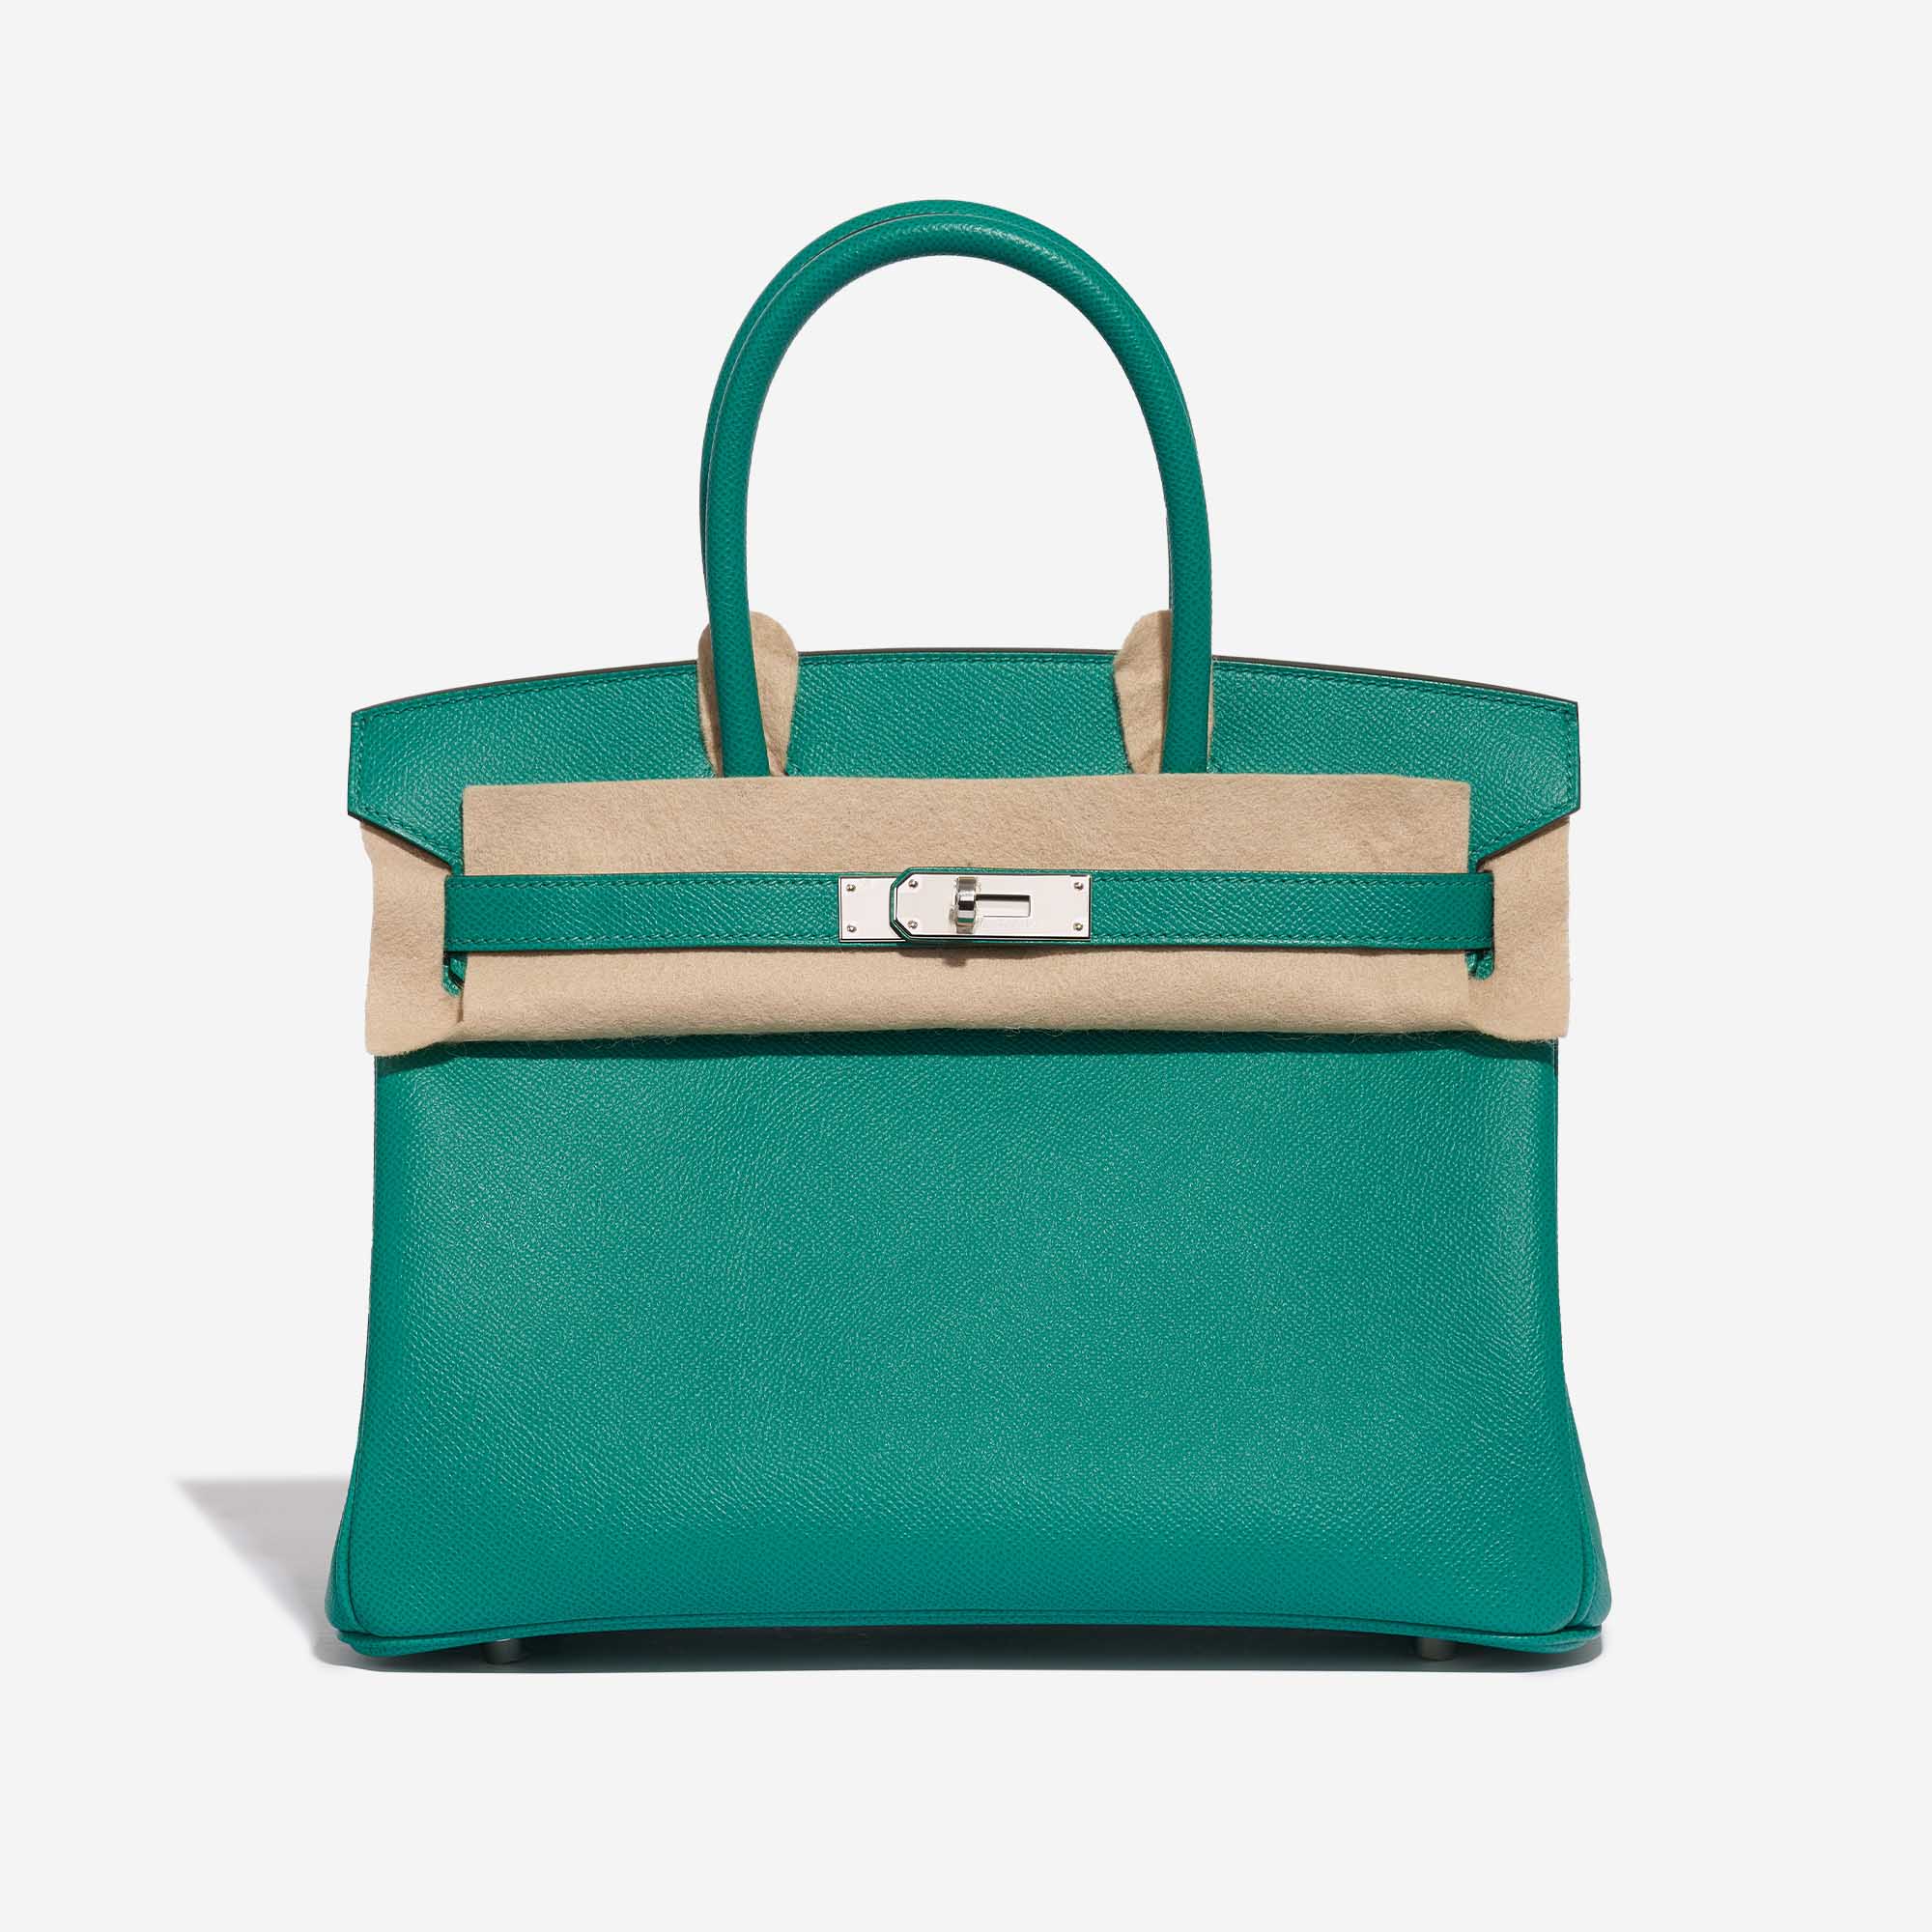 Pre-owned Hermès Tasche Birkin 30 Epsom Vert Jade Grün Front Velt | Verkaufen Sie Ihre Designer-Tasche auf Saclab.com